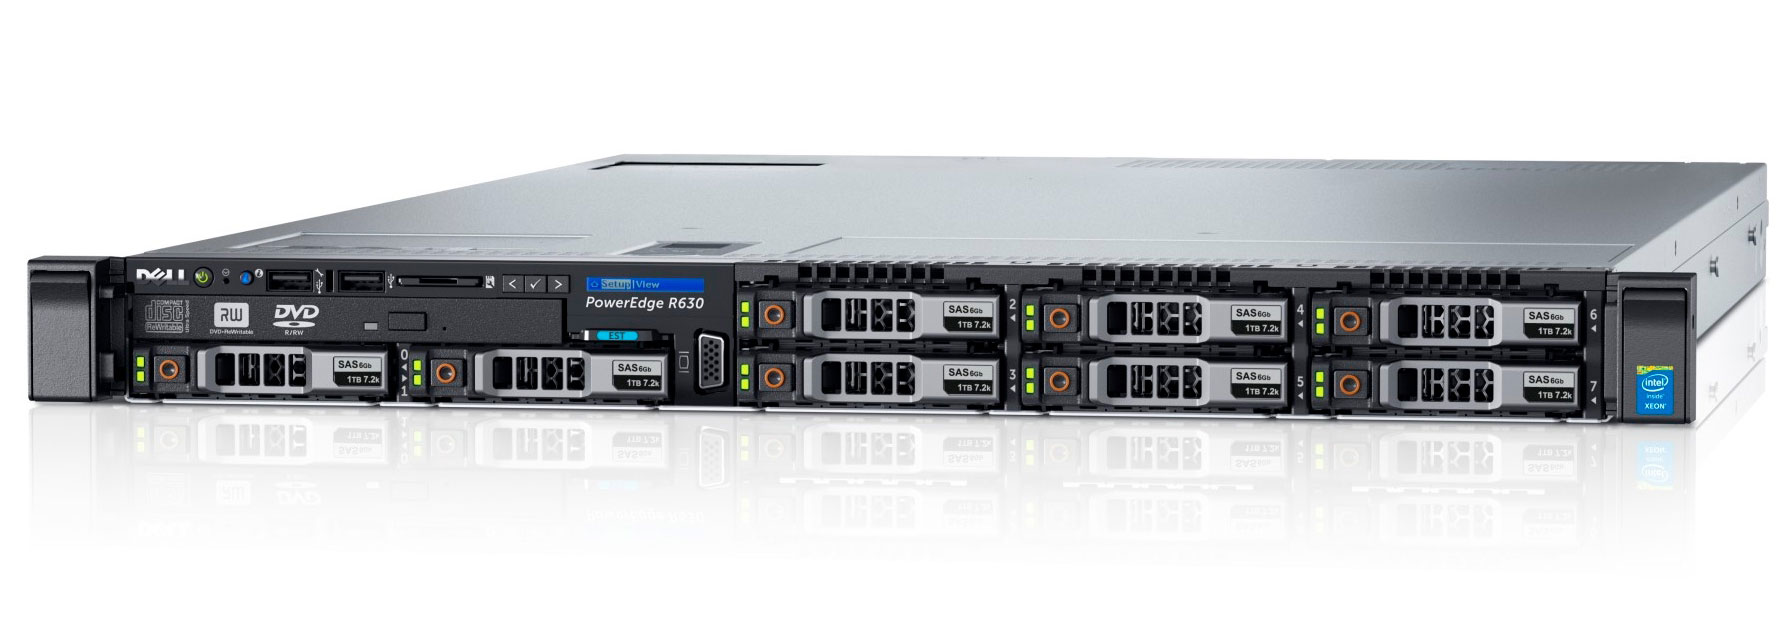 Подробное фото Сервер DELL PowerEdge R630 2*Xeon E5-2640v3 64Gb 2133P DDR4 8x noHDD 2.5" SAS RAID Perc H730, 2*PSU